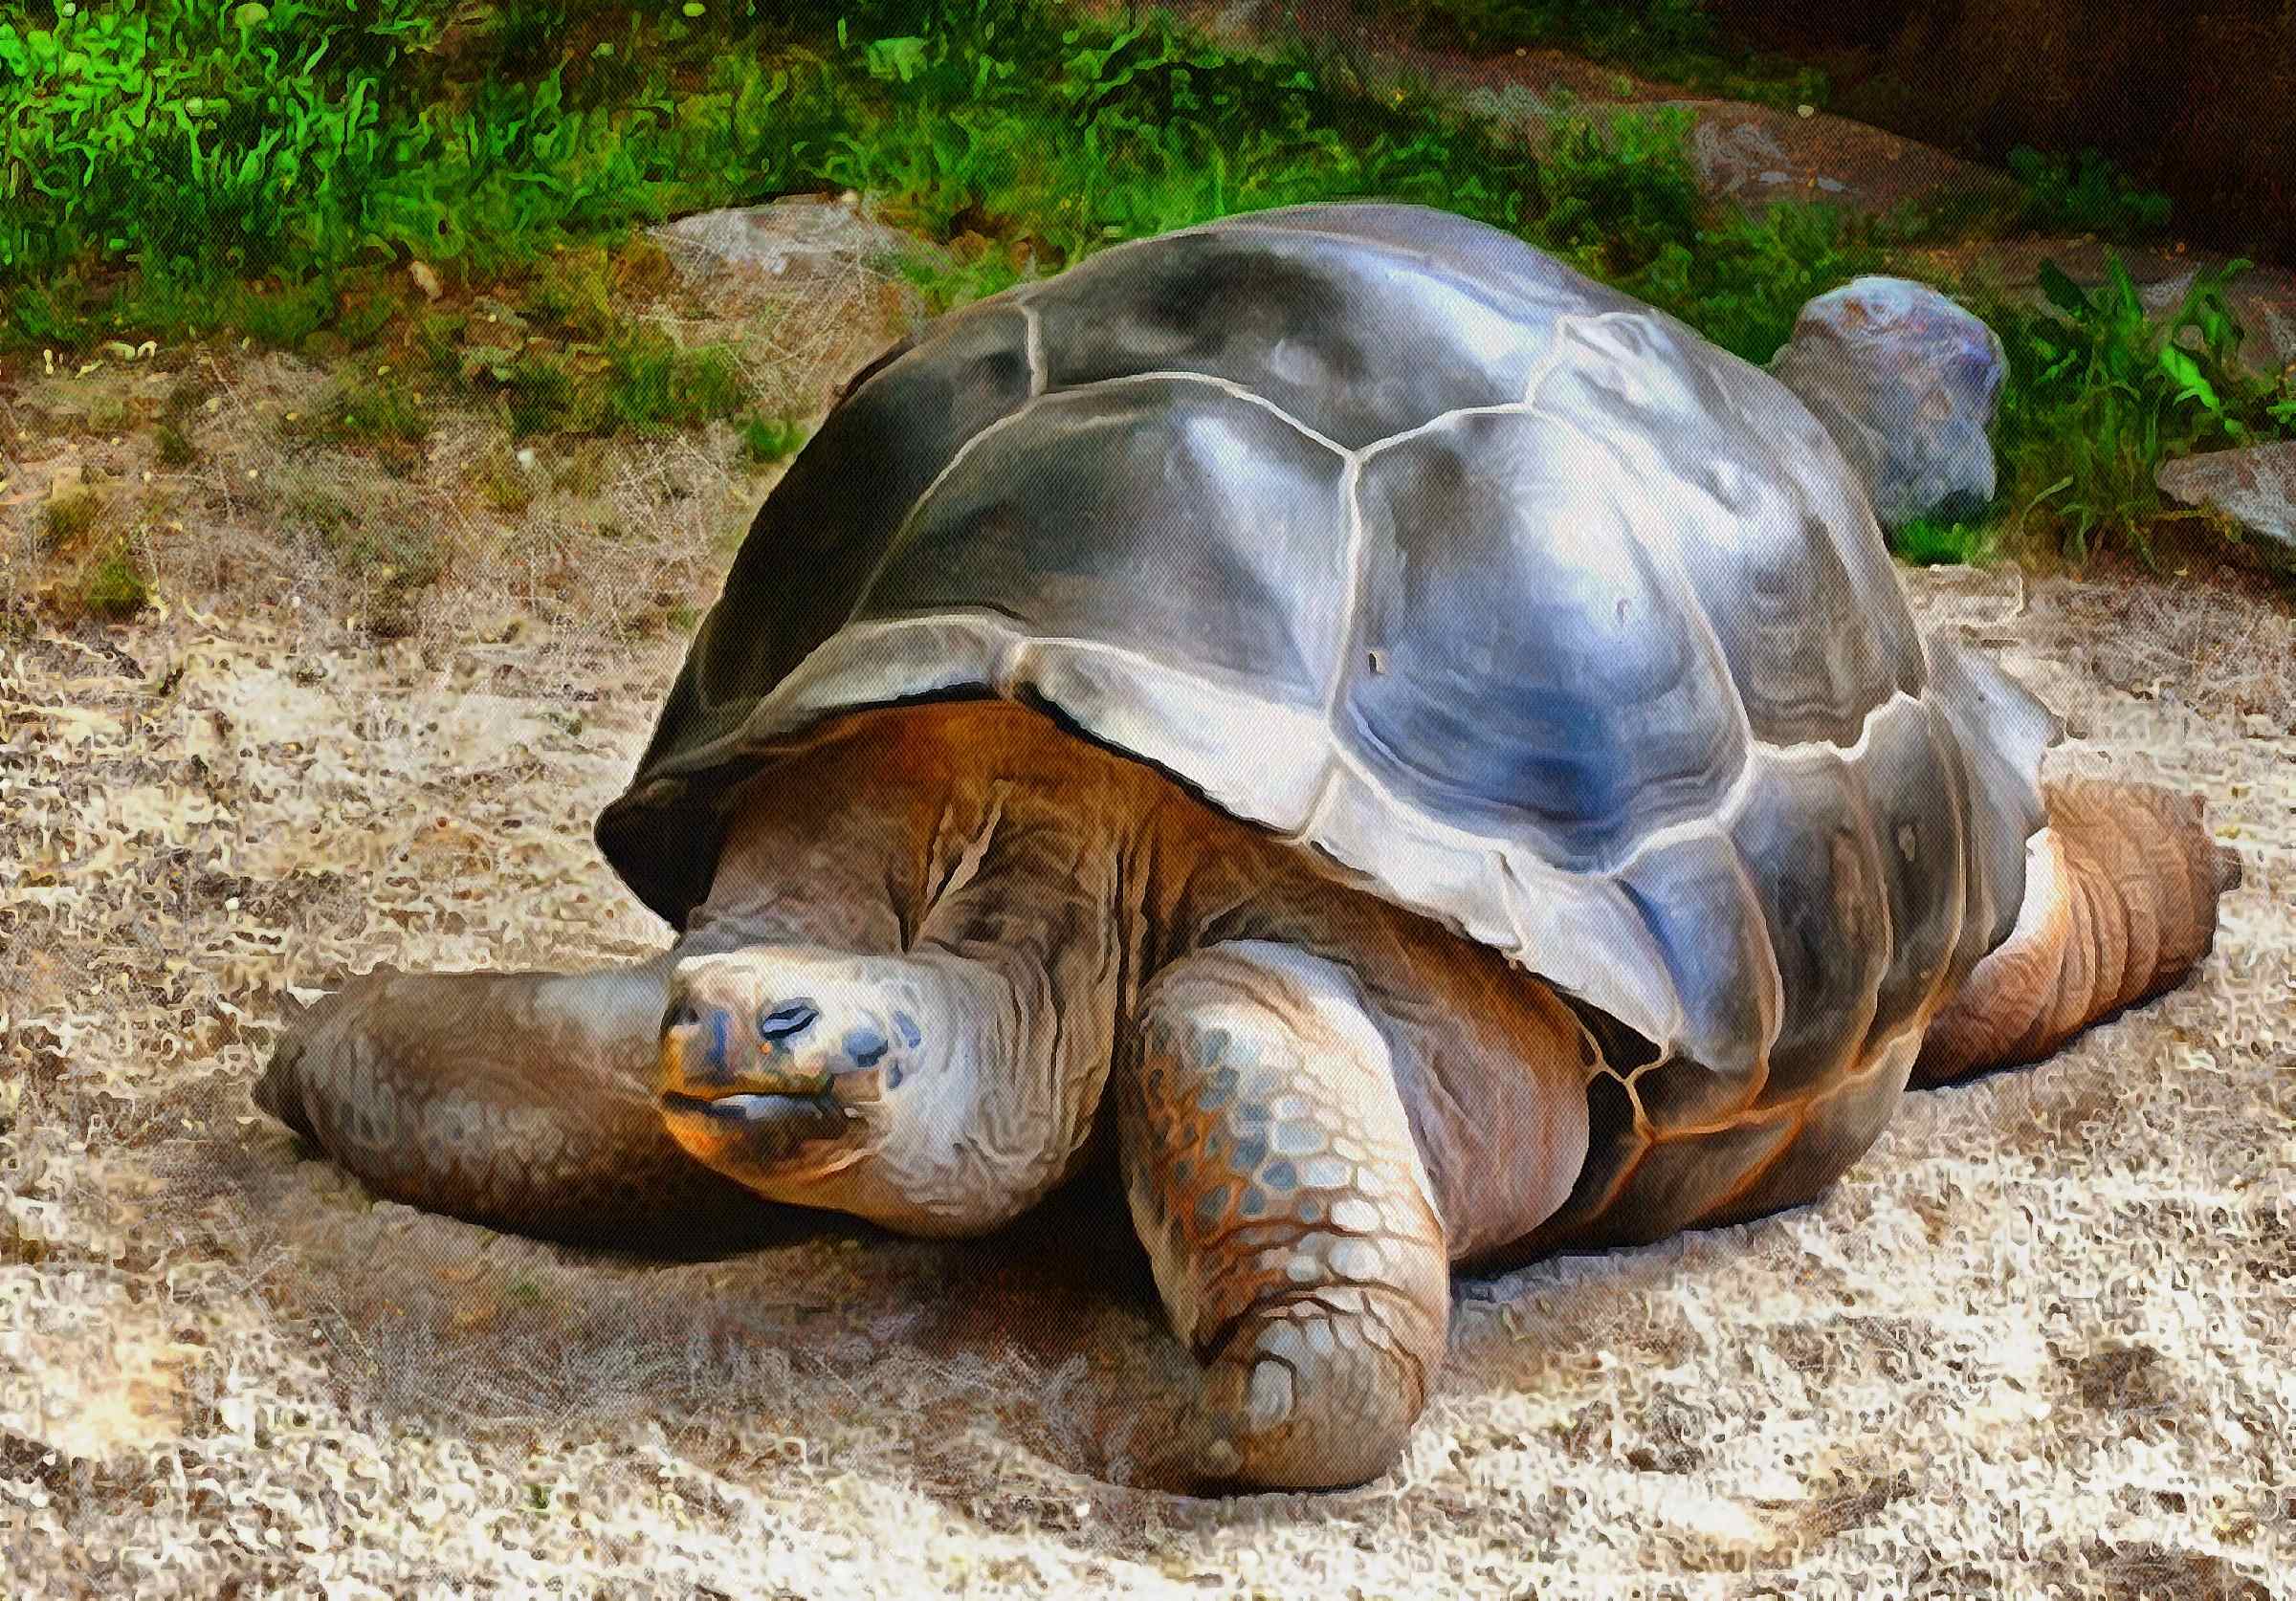 Turtle, Tortoise, Turtle free images, tortoise images, chelonian, leatherback, loggerhead, turtle, – Turtle free, Tortoise free , Turtle stock free images, Download free images turtles, turtle public domain images, tortoise public domain images!